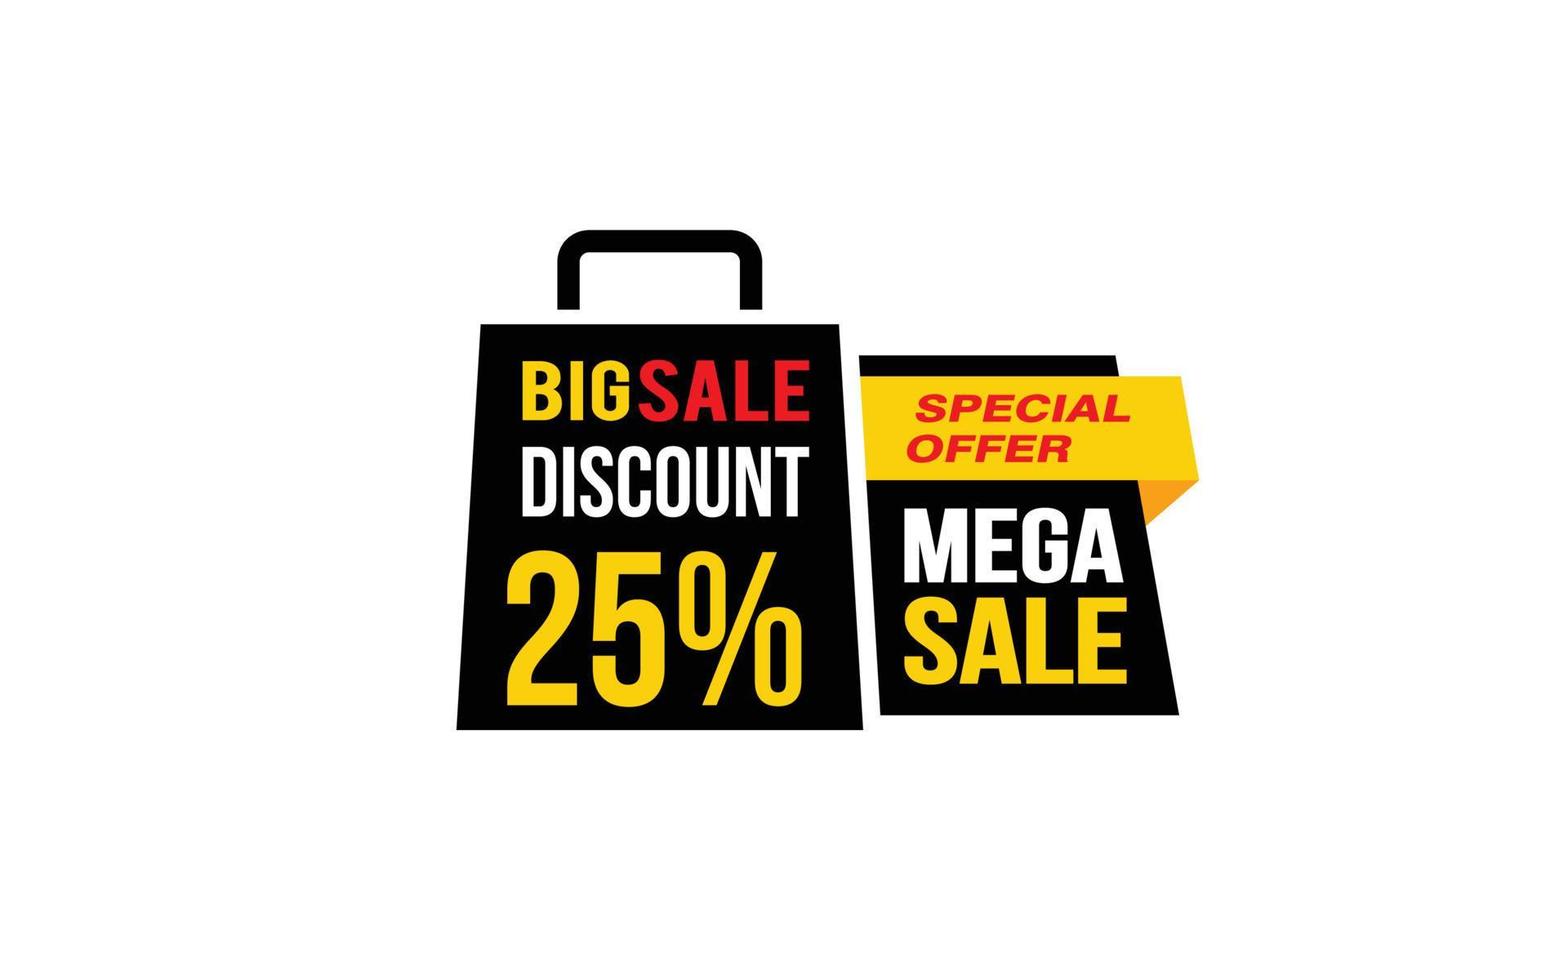 Oferta de mega venda de 25%, liberação, layout de banner de promoção com estilo de adesivo. vetor